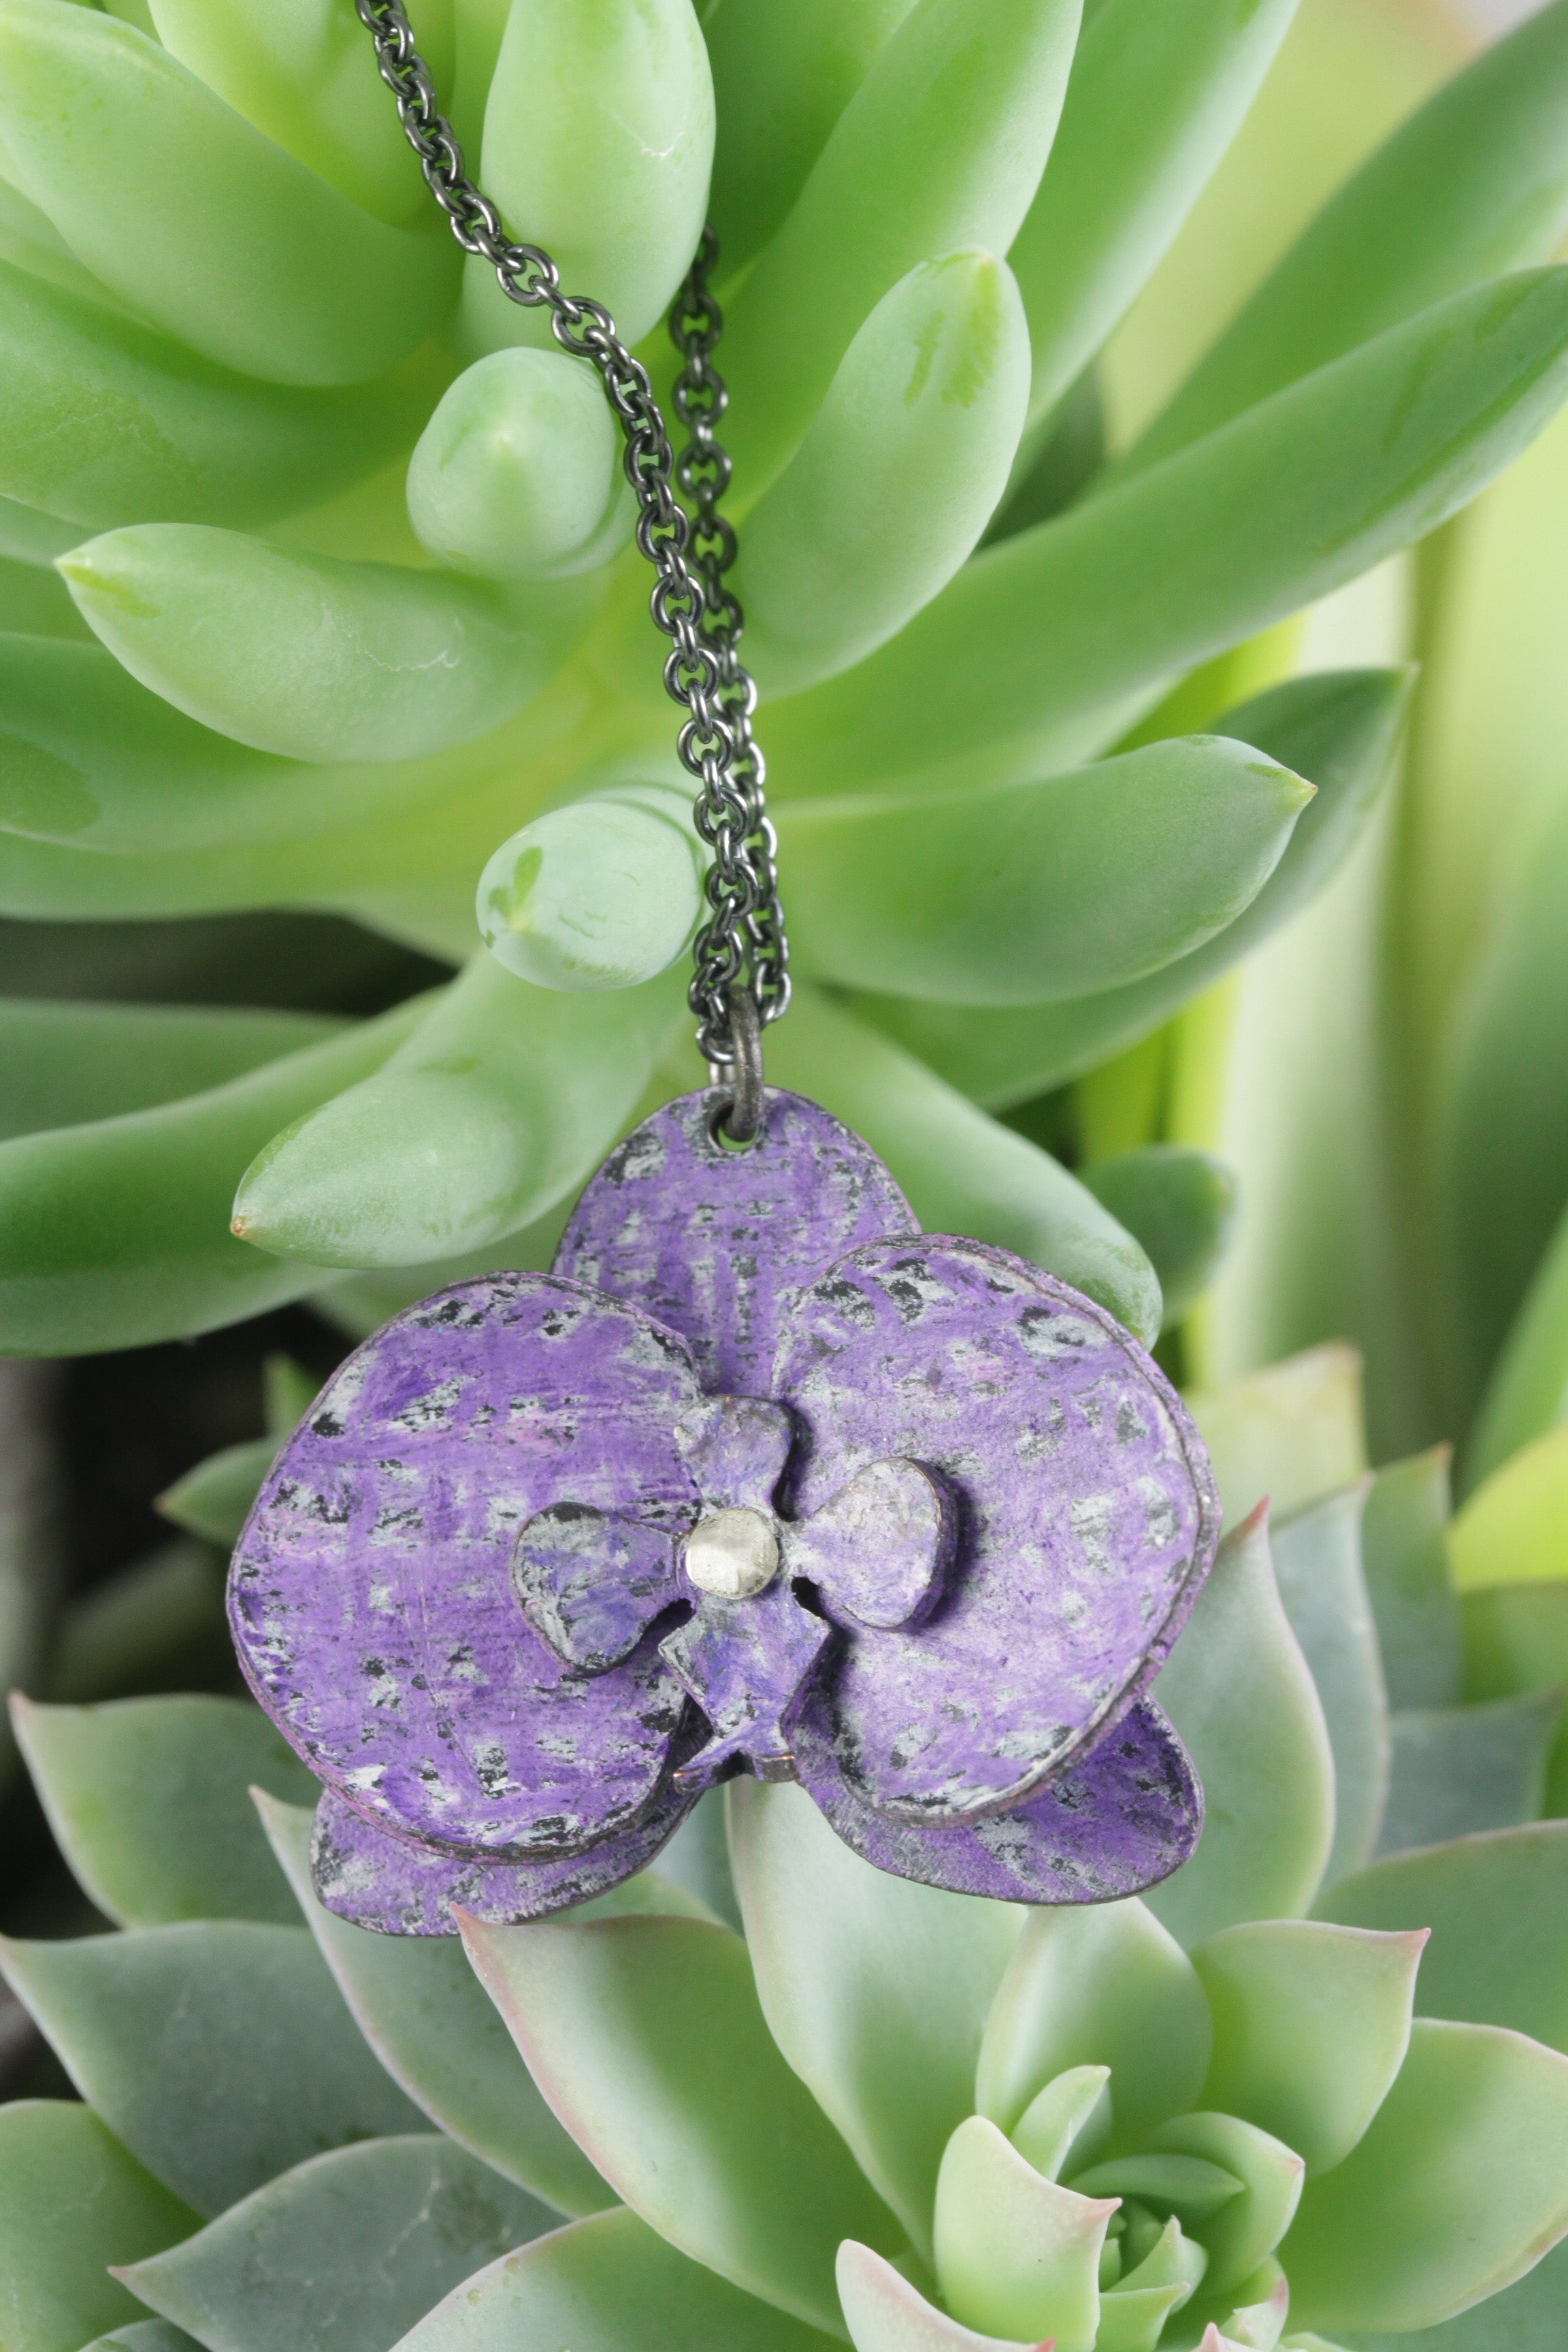 Orchid Pendant: Purple Flower